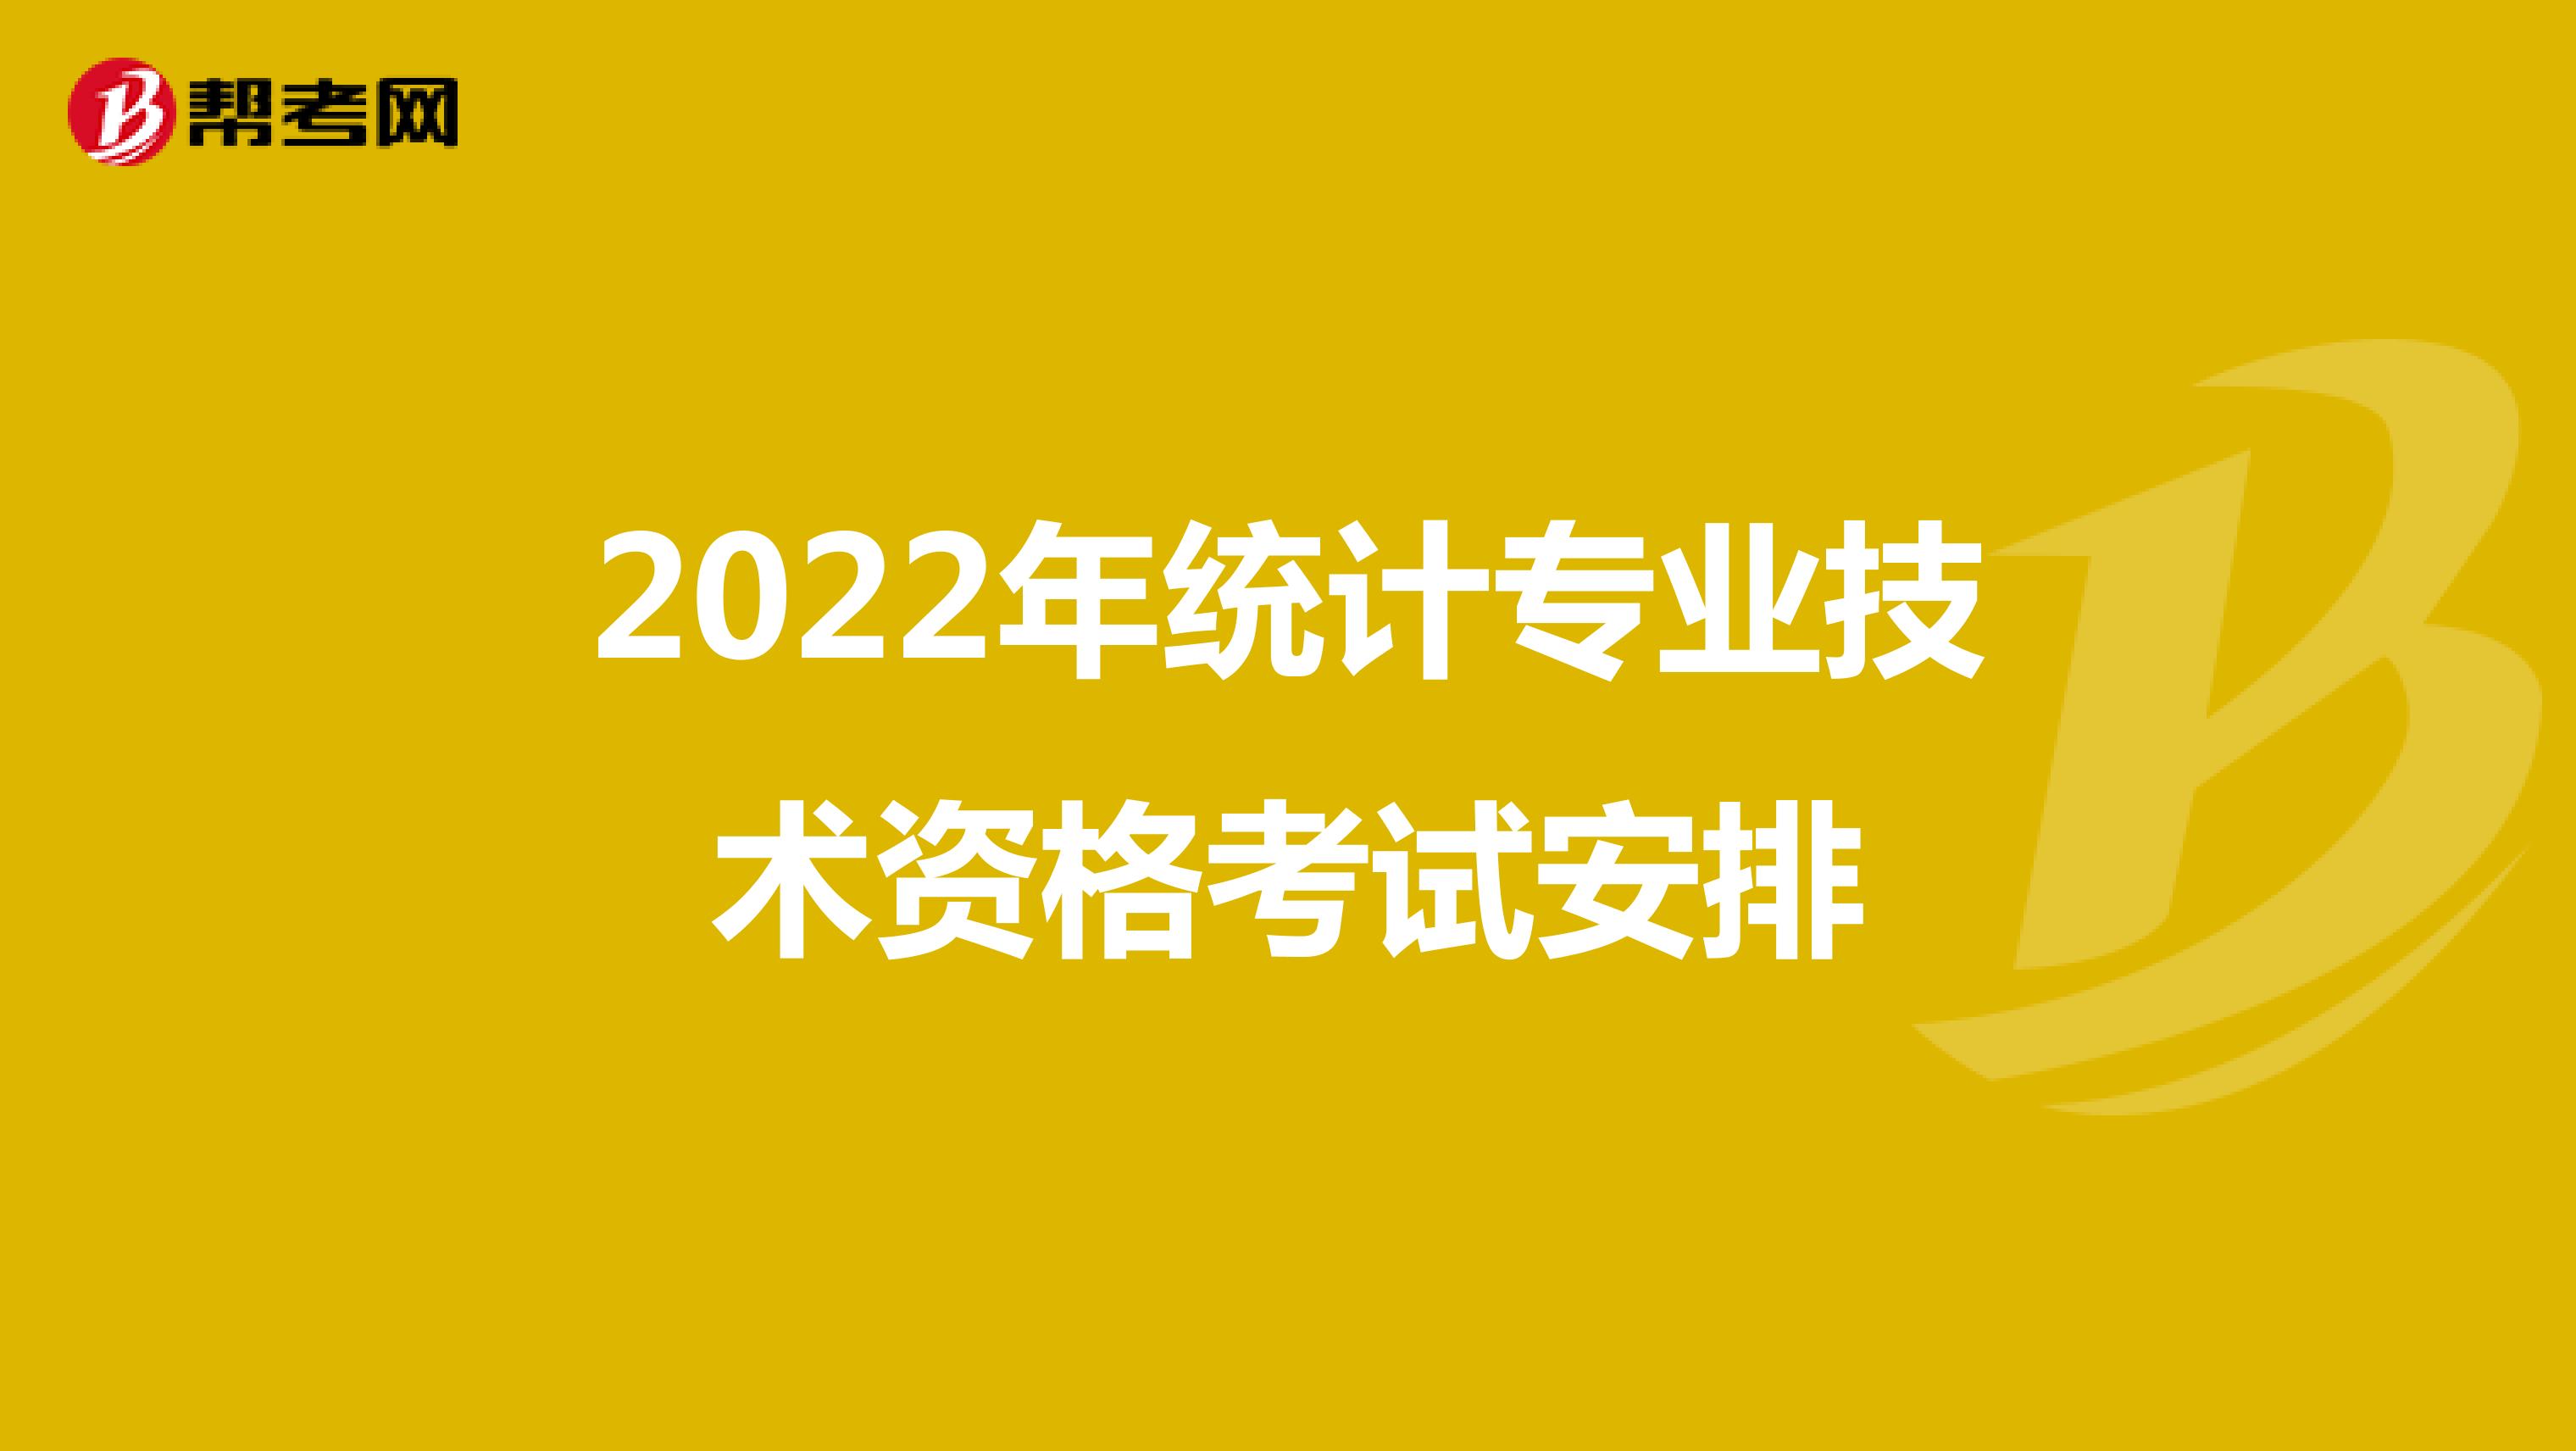 2022年统计专业技术资格考试安排